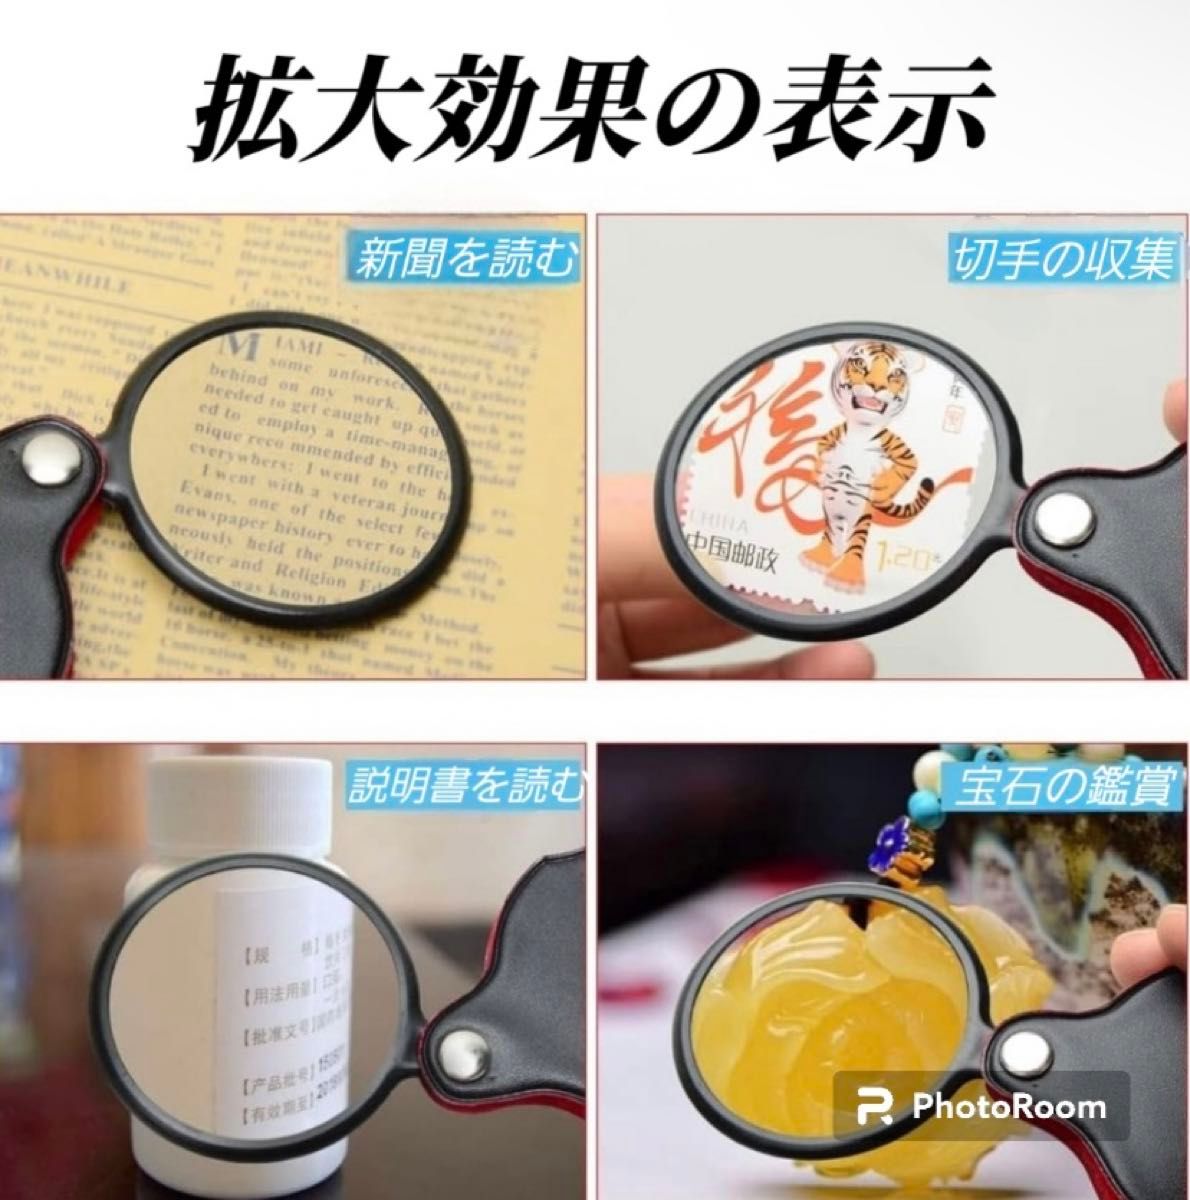 拡大鏡 ルーペ 折りたたみ式 レンズ コンパクト 虫眼鏡 読書 携帯便利